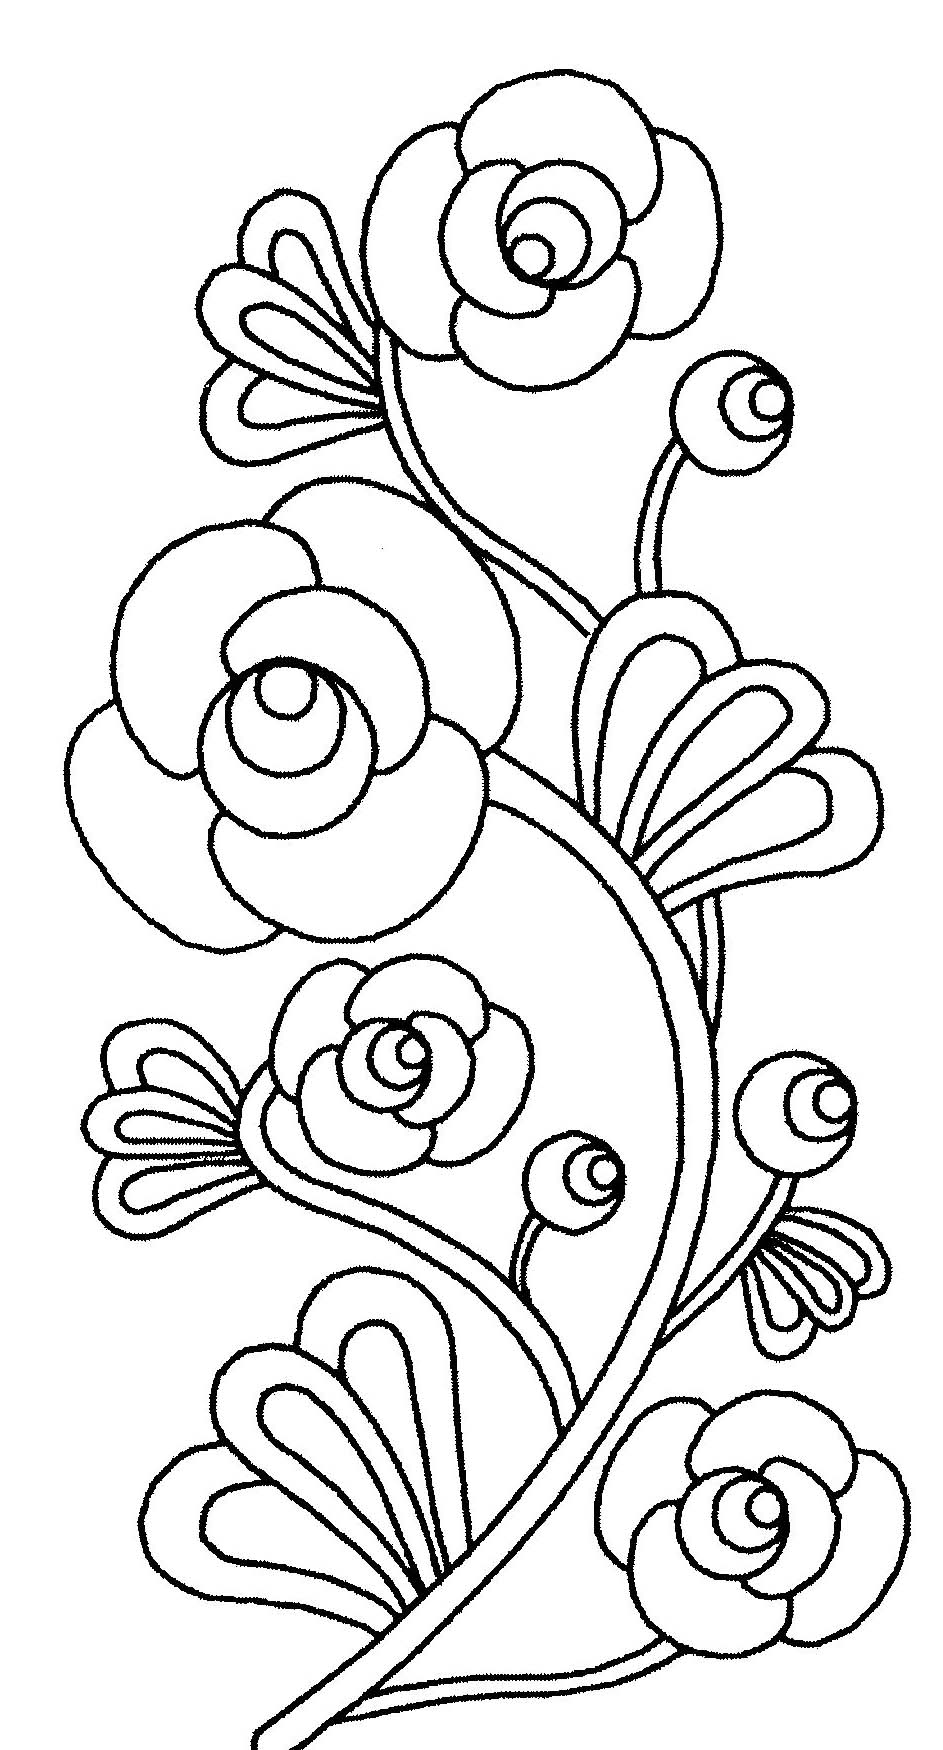 Dibujo de Flores para imprimir y colorear